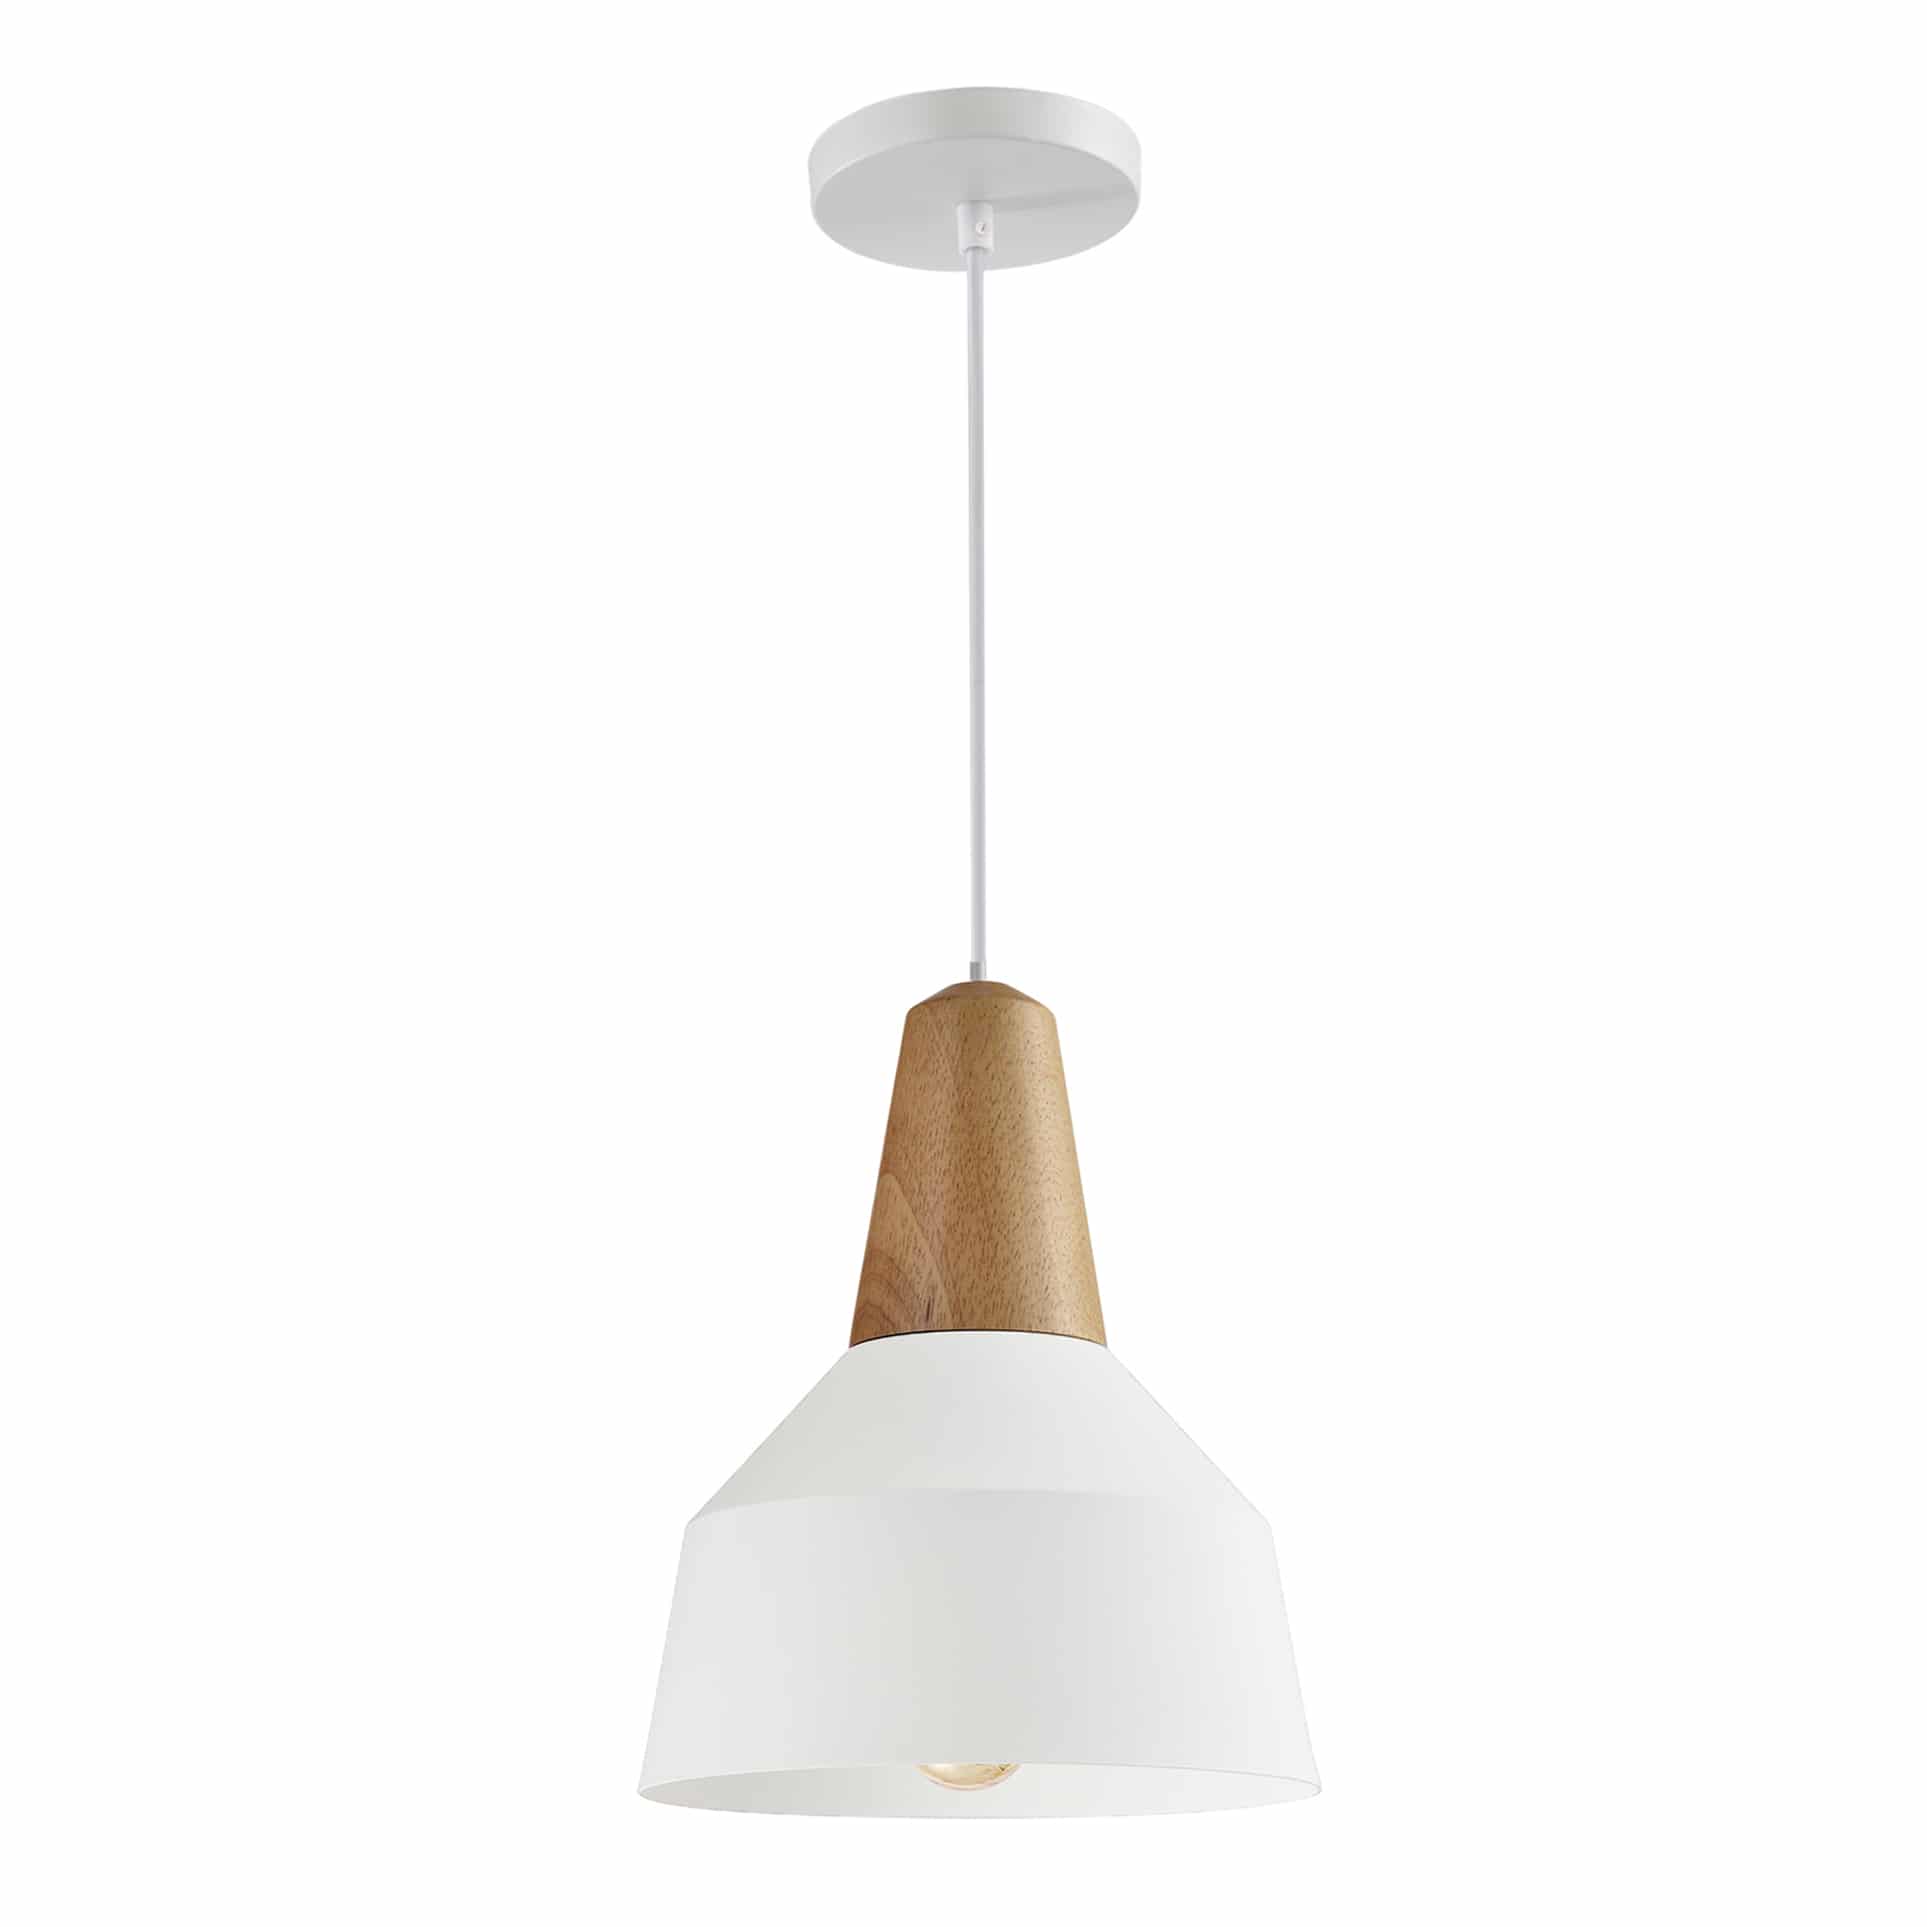 Witte hanglamp met bruin houten kop